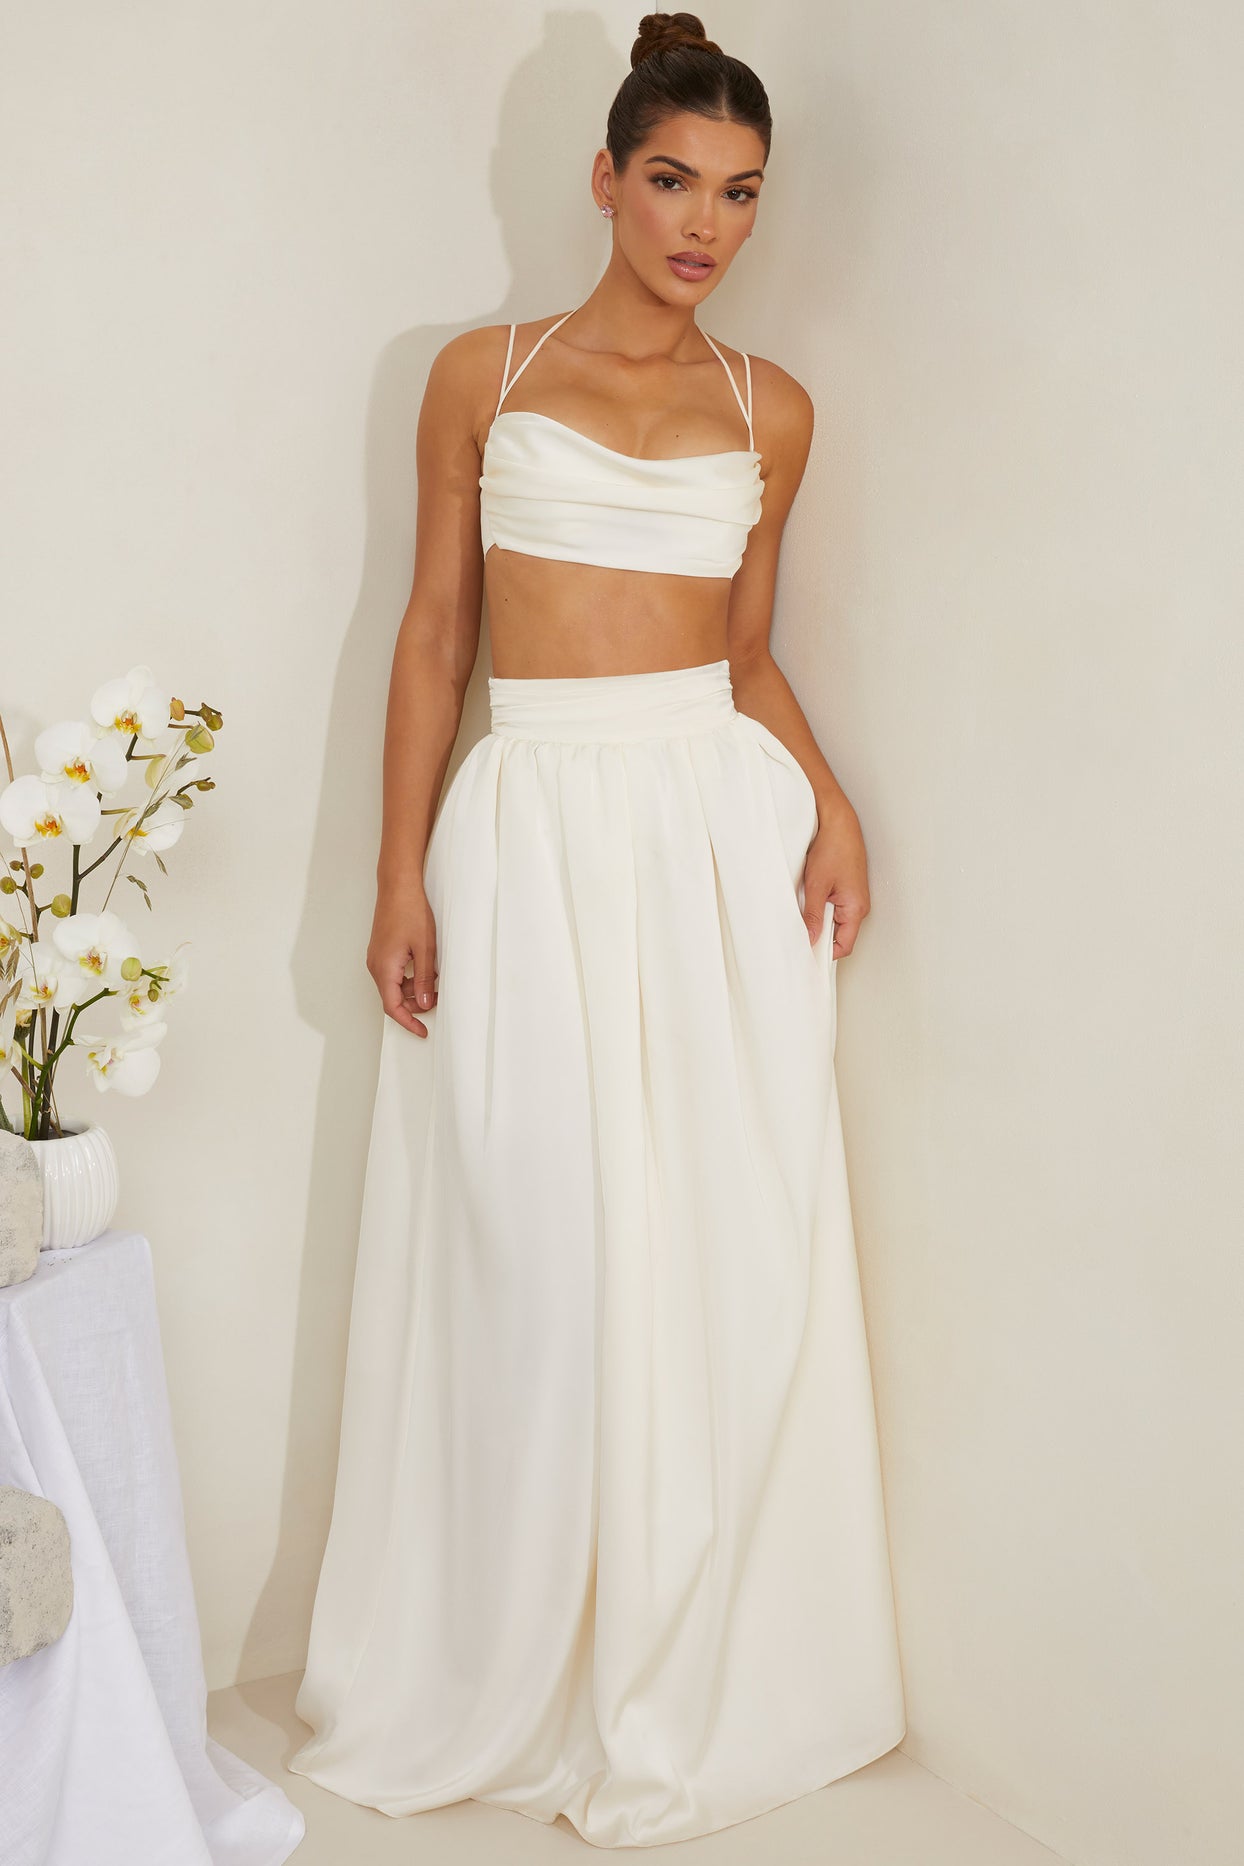 Plisowana, gruba satynowa spódnica maxi w kolorze białym